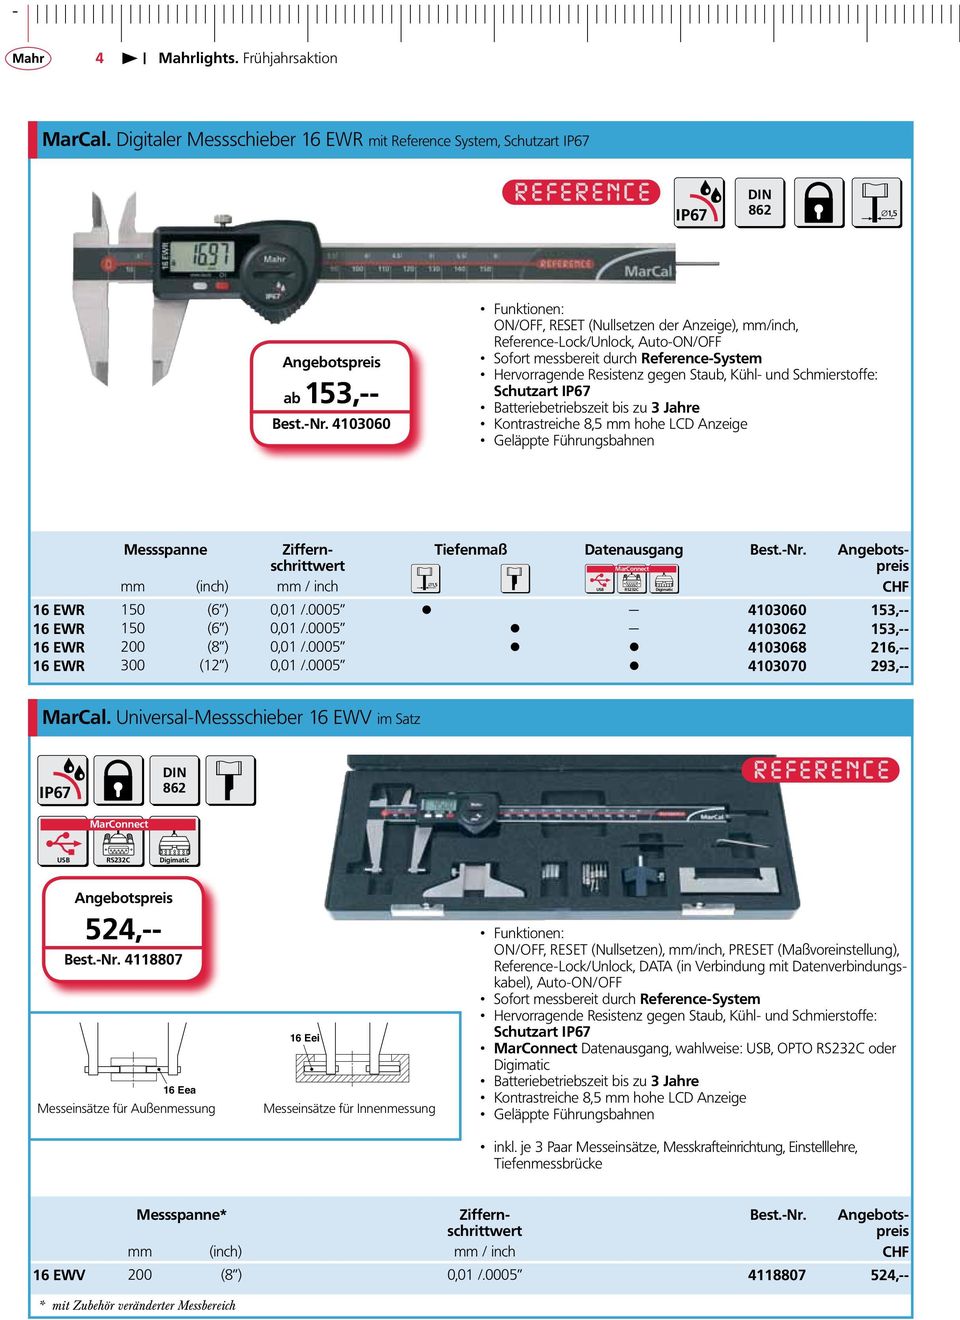 Schmierstoffe: Schutzart IP67 Batteriebetriebszeit bis zu 3 Jahre Kontrastreiche 8,5 mm hohe LCD Anzeige Geläppte Führungsbahnen Messspanne Ziffernschrittwert mm (inch) mm / inch RS232C Digimatic CHF